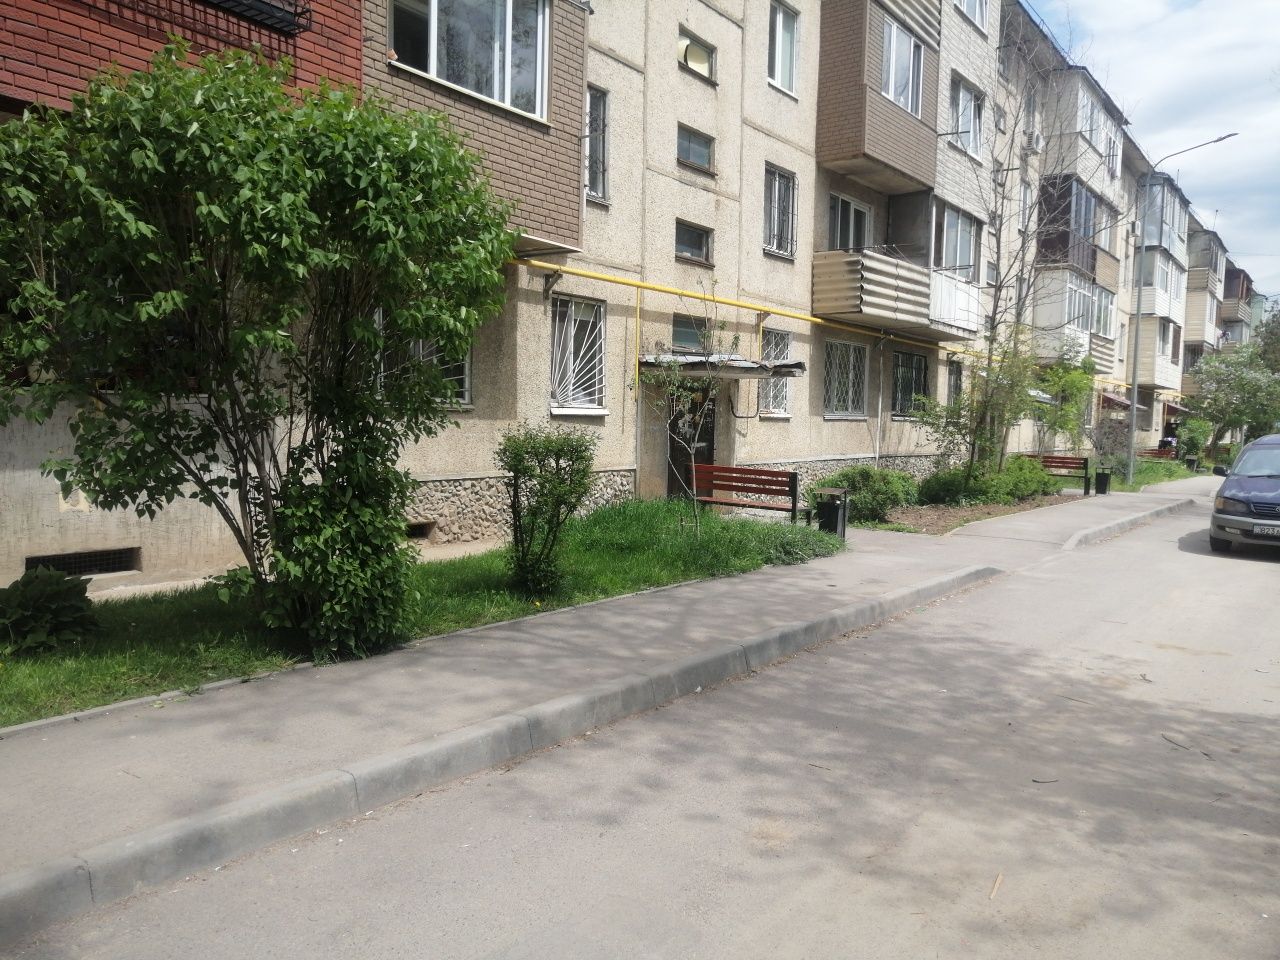 Продам квартиру Срочно срочно В Талгаре на против цона срочно